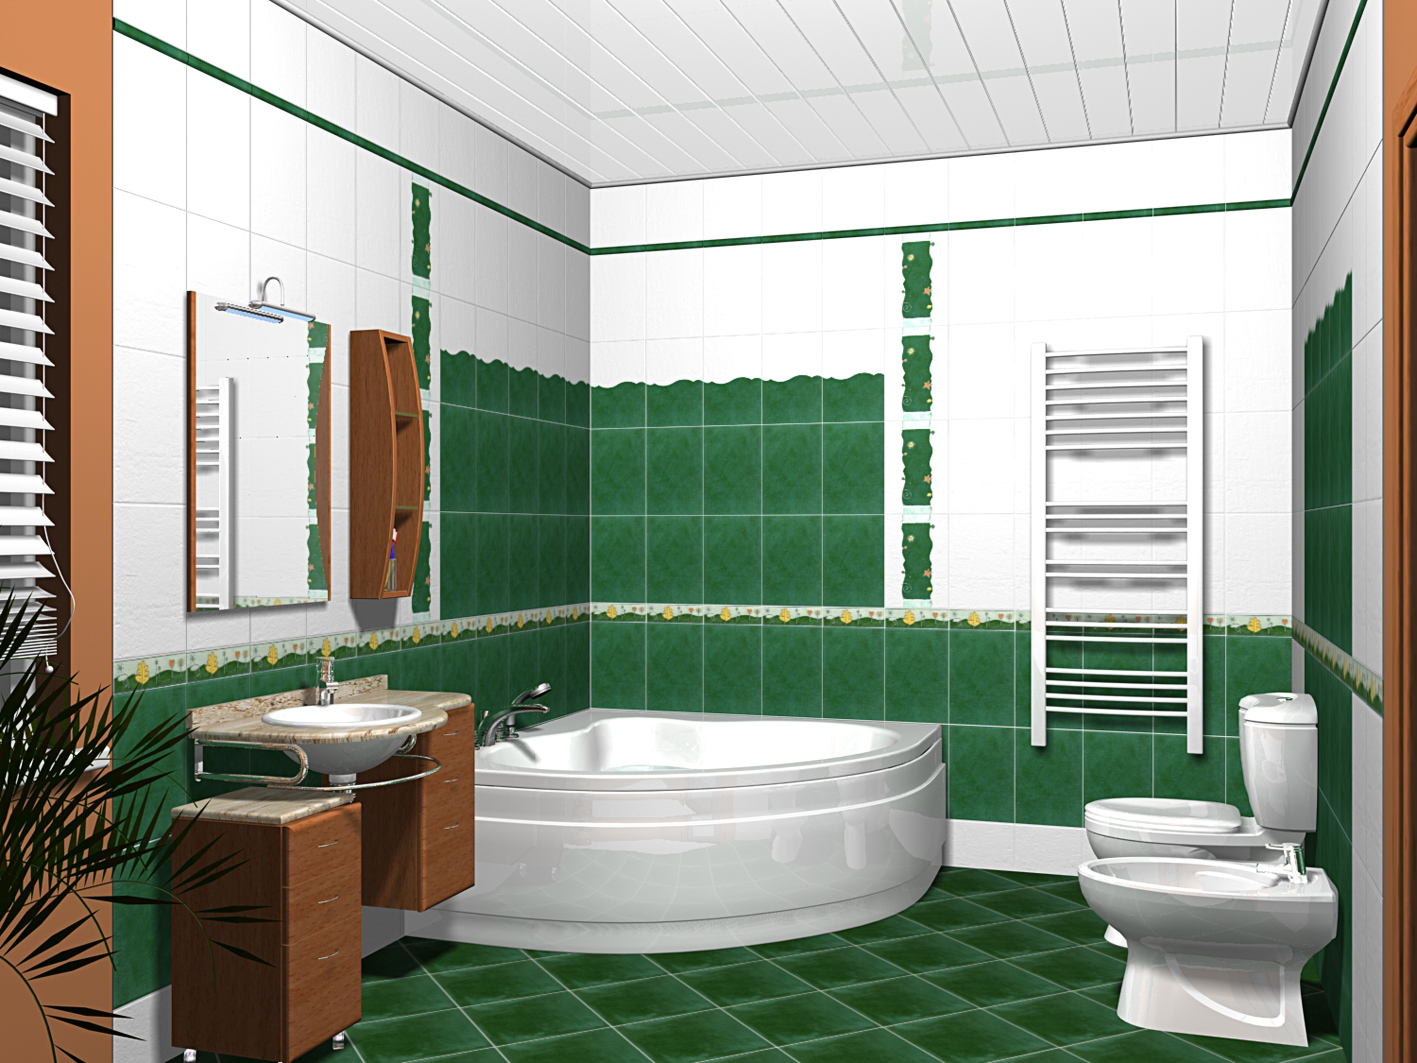 Planiranje 3d dizajna kupaonice u programu Dizajn enterijera 3D - Video upute